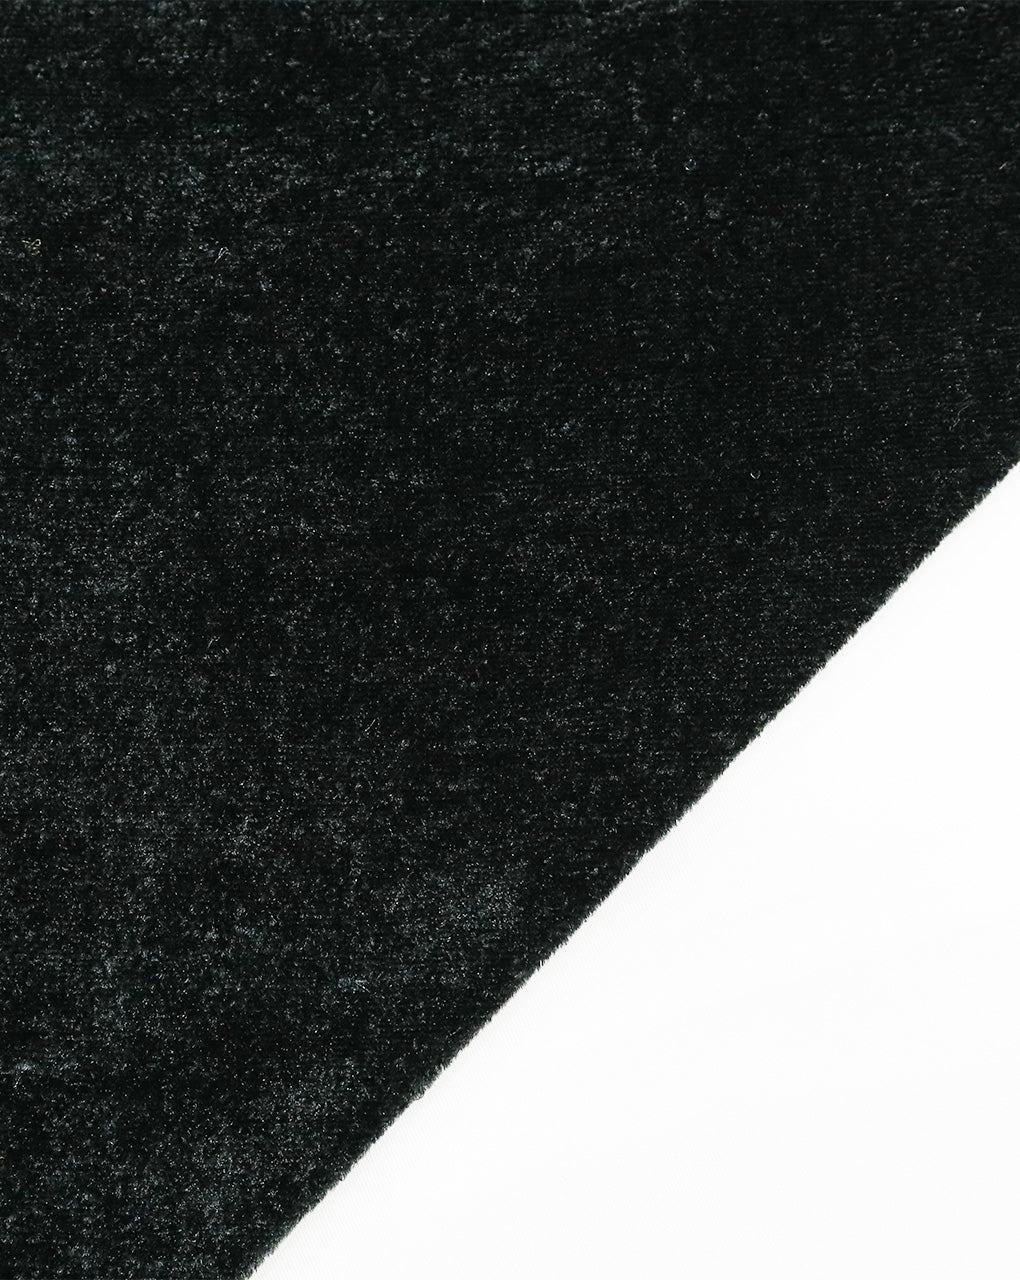 BLACK PLAIN VELVET LYCRA FABRIC ( WIDTH 58 INCHES )